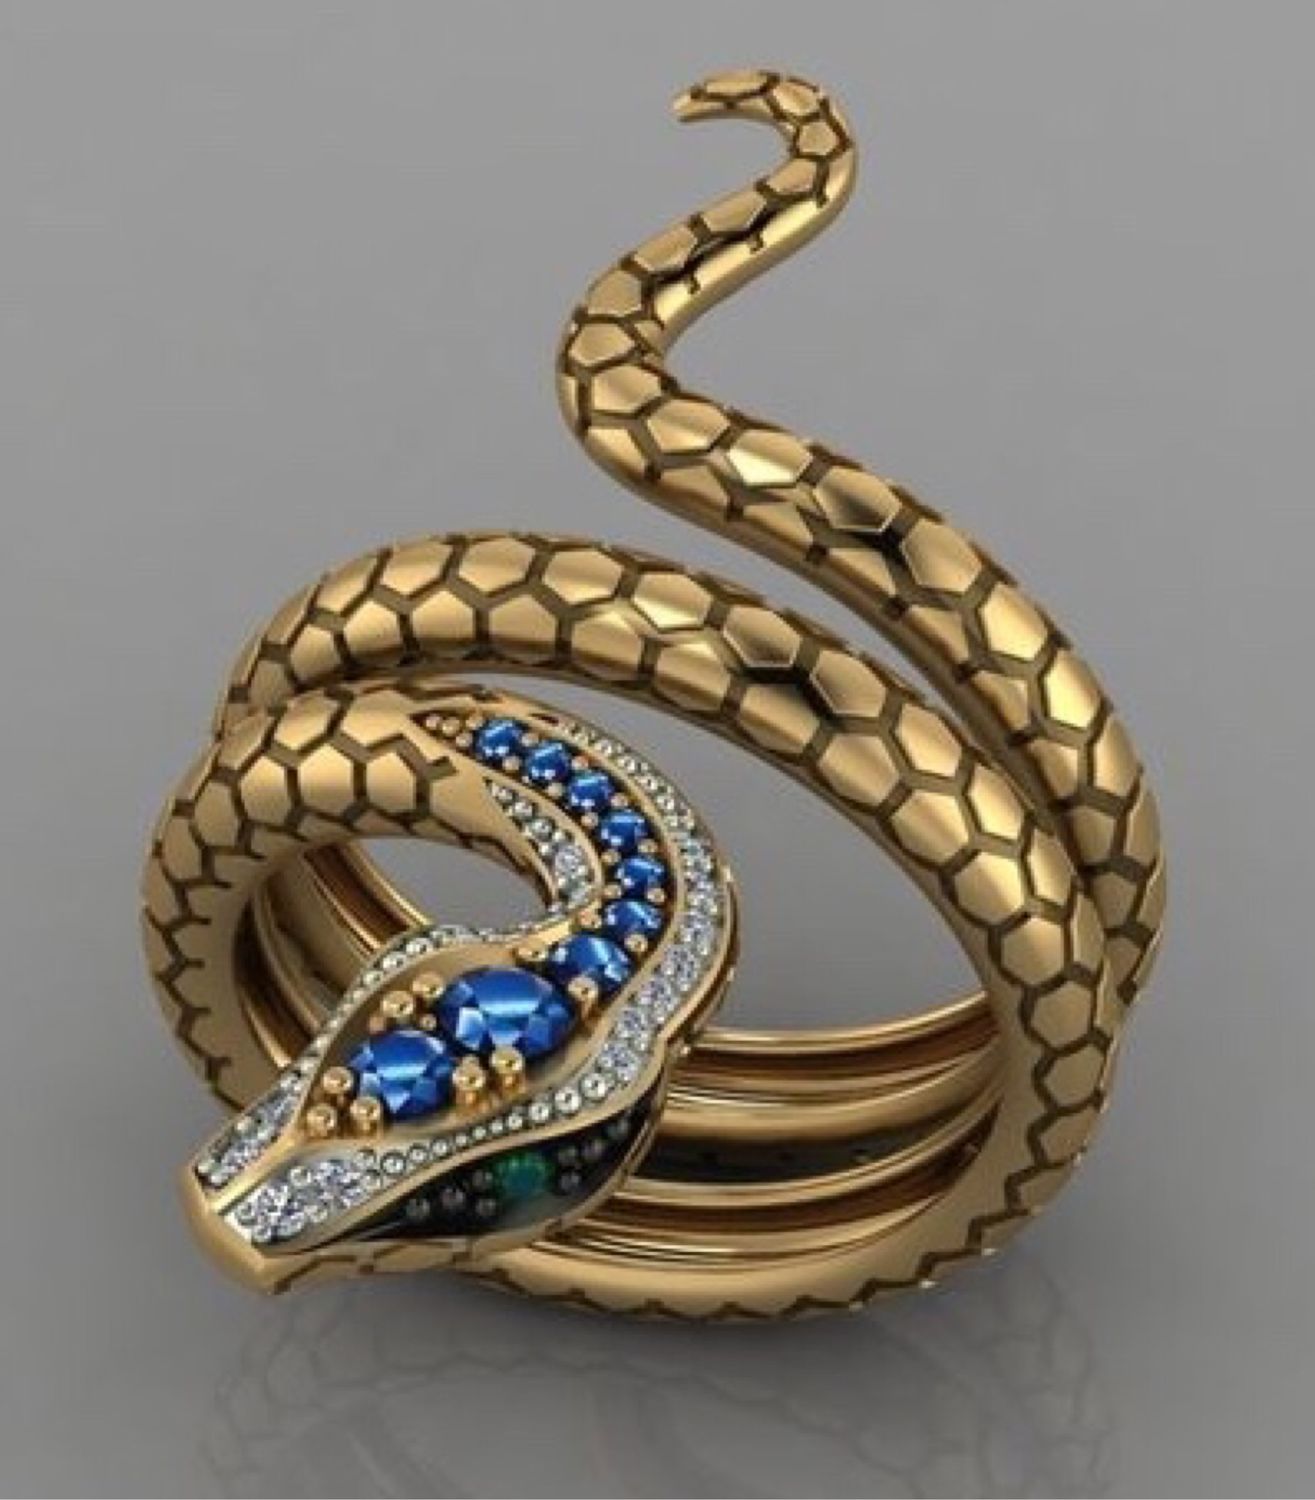 Кольцо в виде змеи с камнем